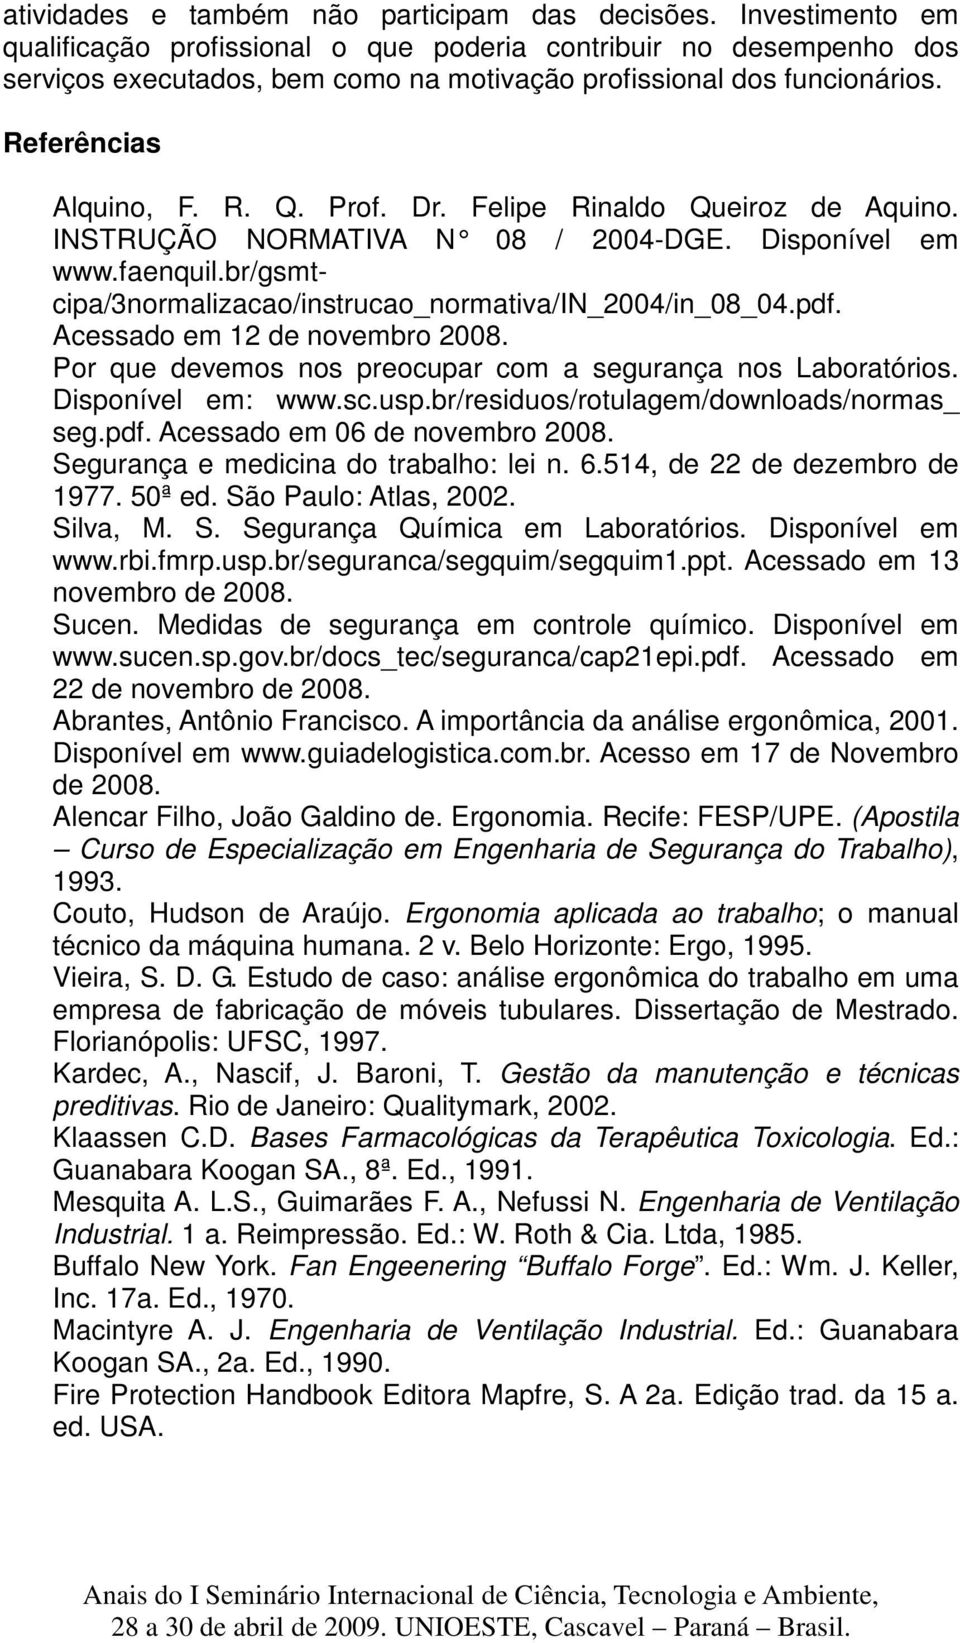 Felipe Rinaldo Queiroz de Aquino. INSTRUÇÃO NORMATIVA N 08 / 2004-DGE. Disponível em www.faenquil.br/gsmtcipa/3normalizacao/instrucao_normativa/in_2004/in_08_04.pdf. Acessado em 12 de novembro 2008.